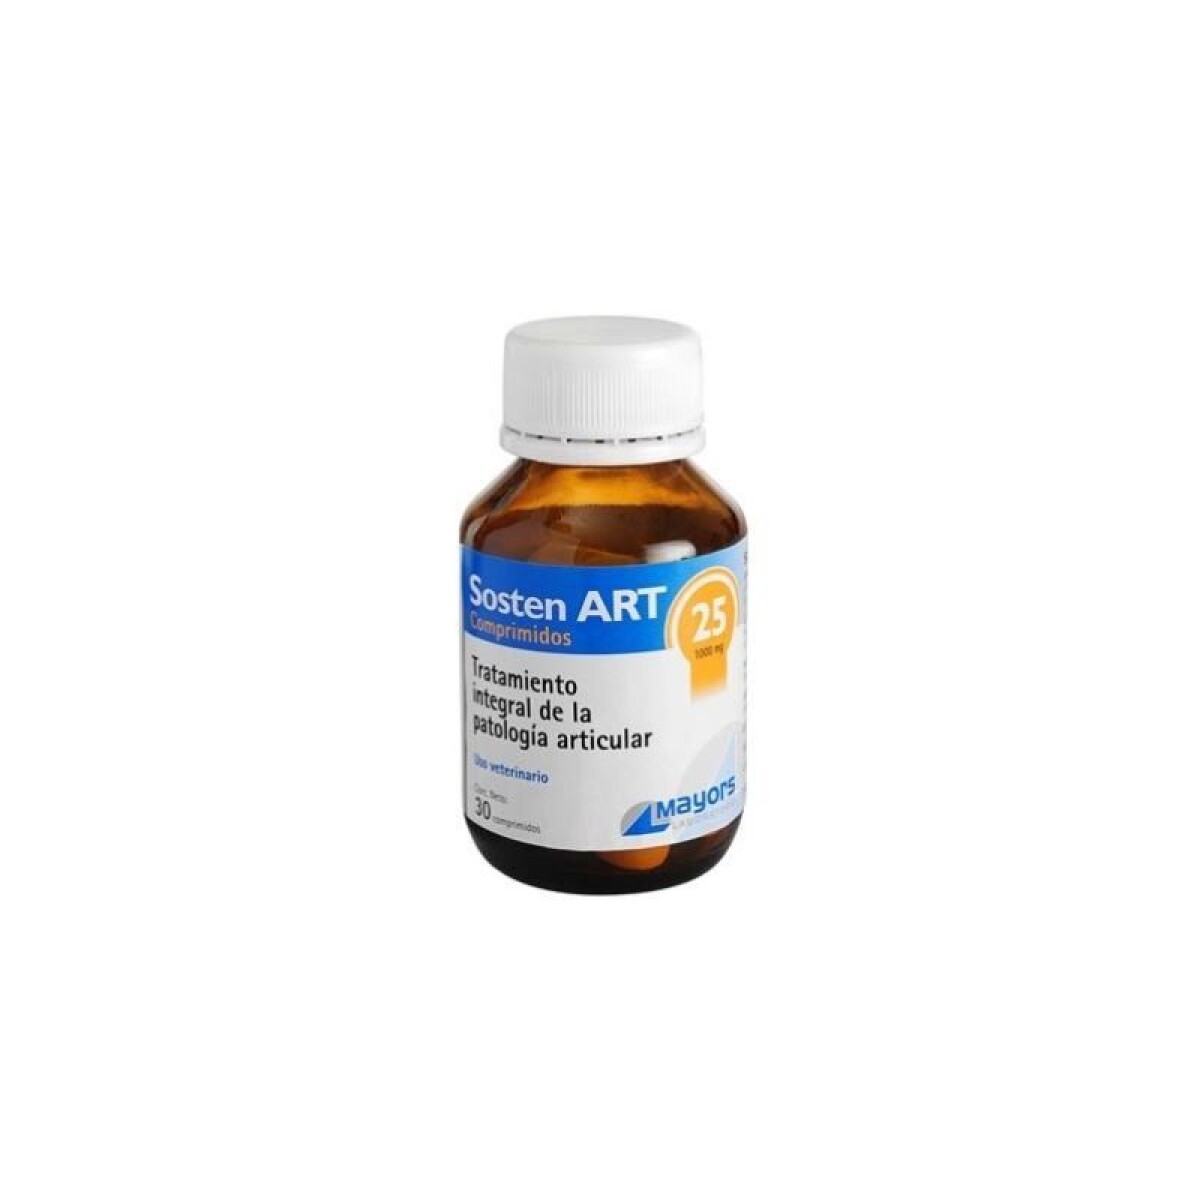 SOSTEN ART 25 (30 COMPRIMIDOS) - Sosten Art 25 (30 Comprimidos) 